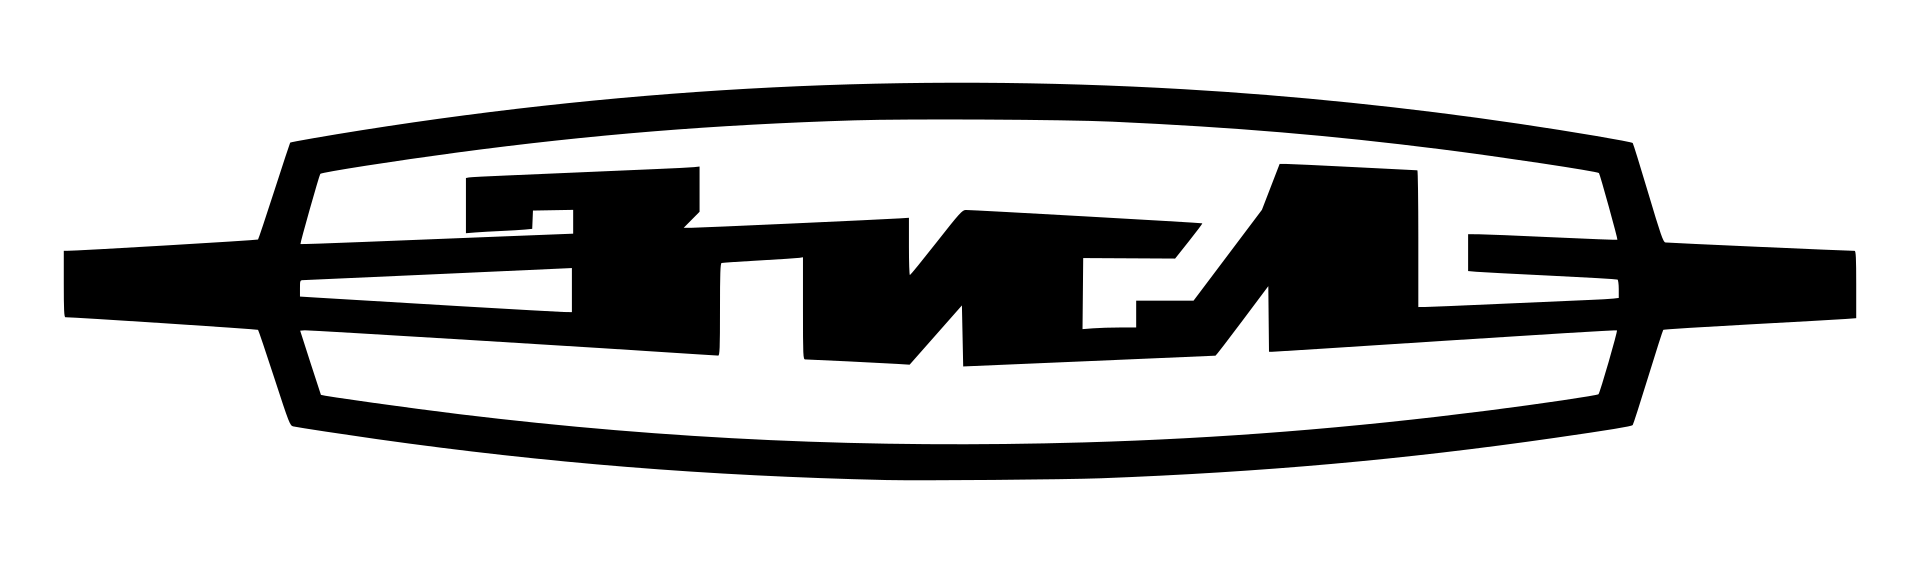 1920px-Amo-zil-logo.svg.png